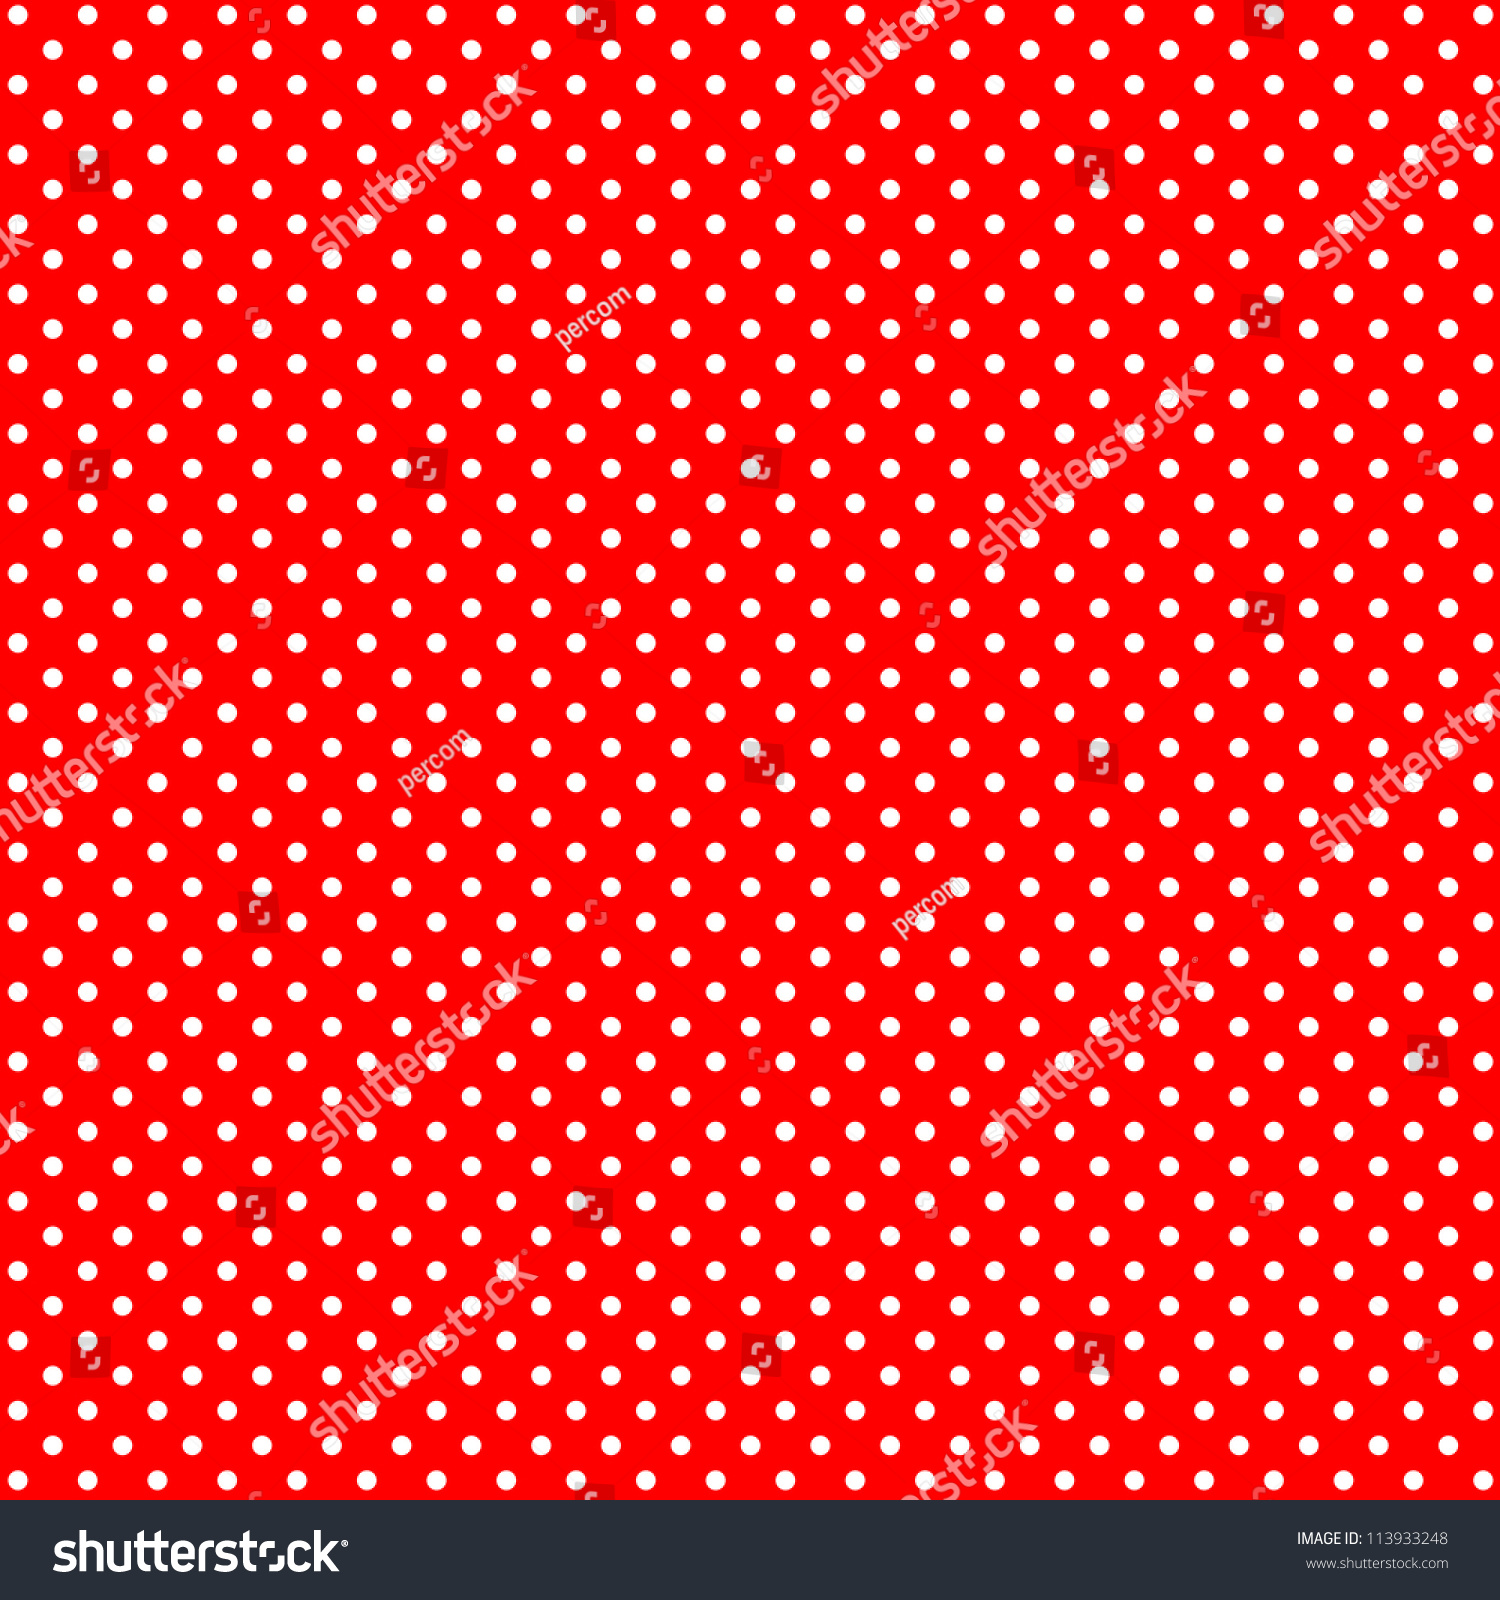 Seamless Polka Dot Background Stock Illustration 113933248 - Shutterstock